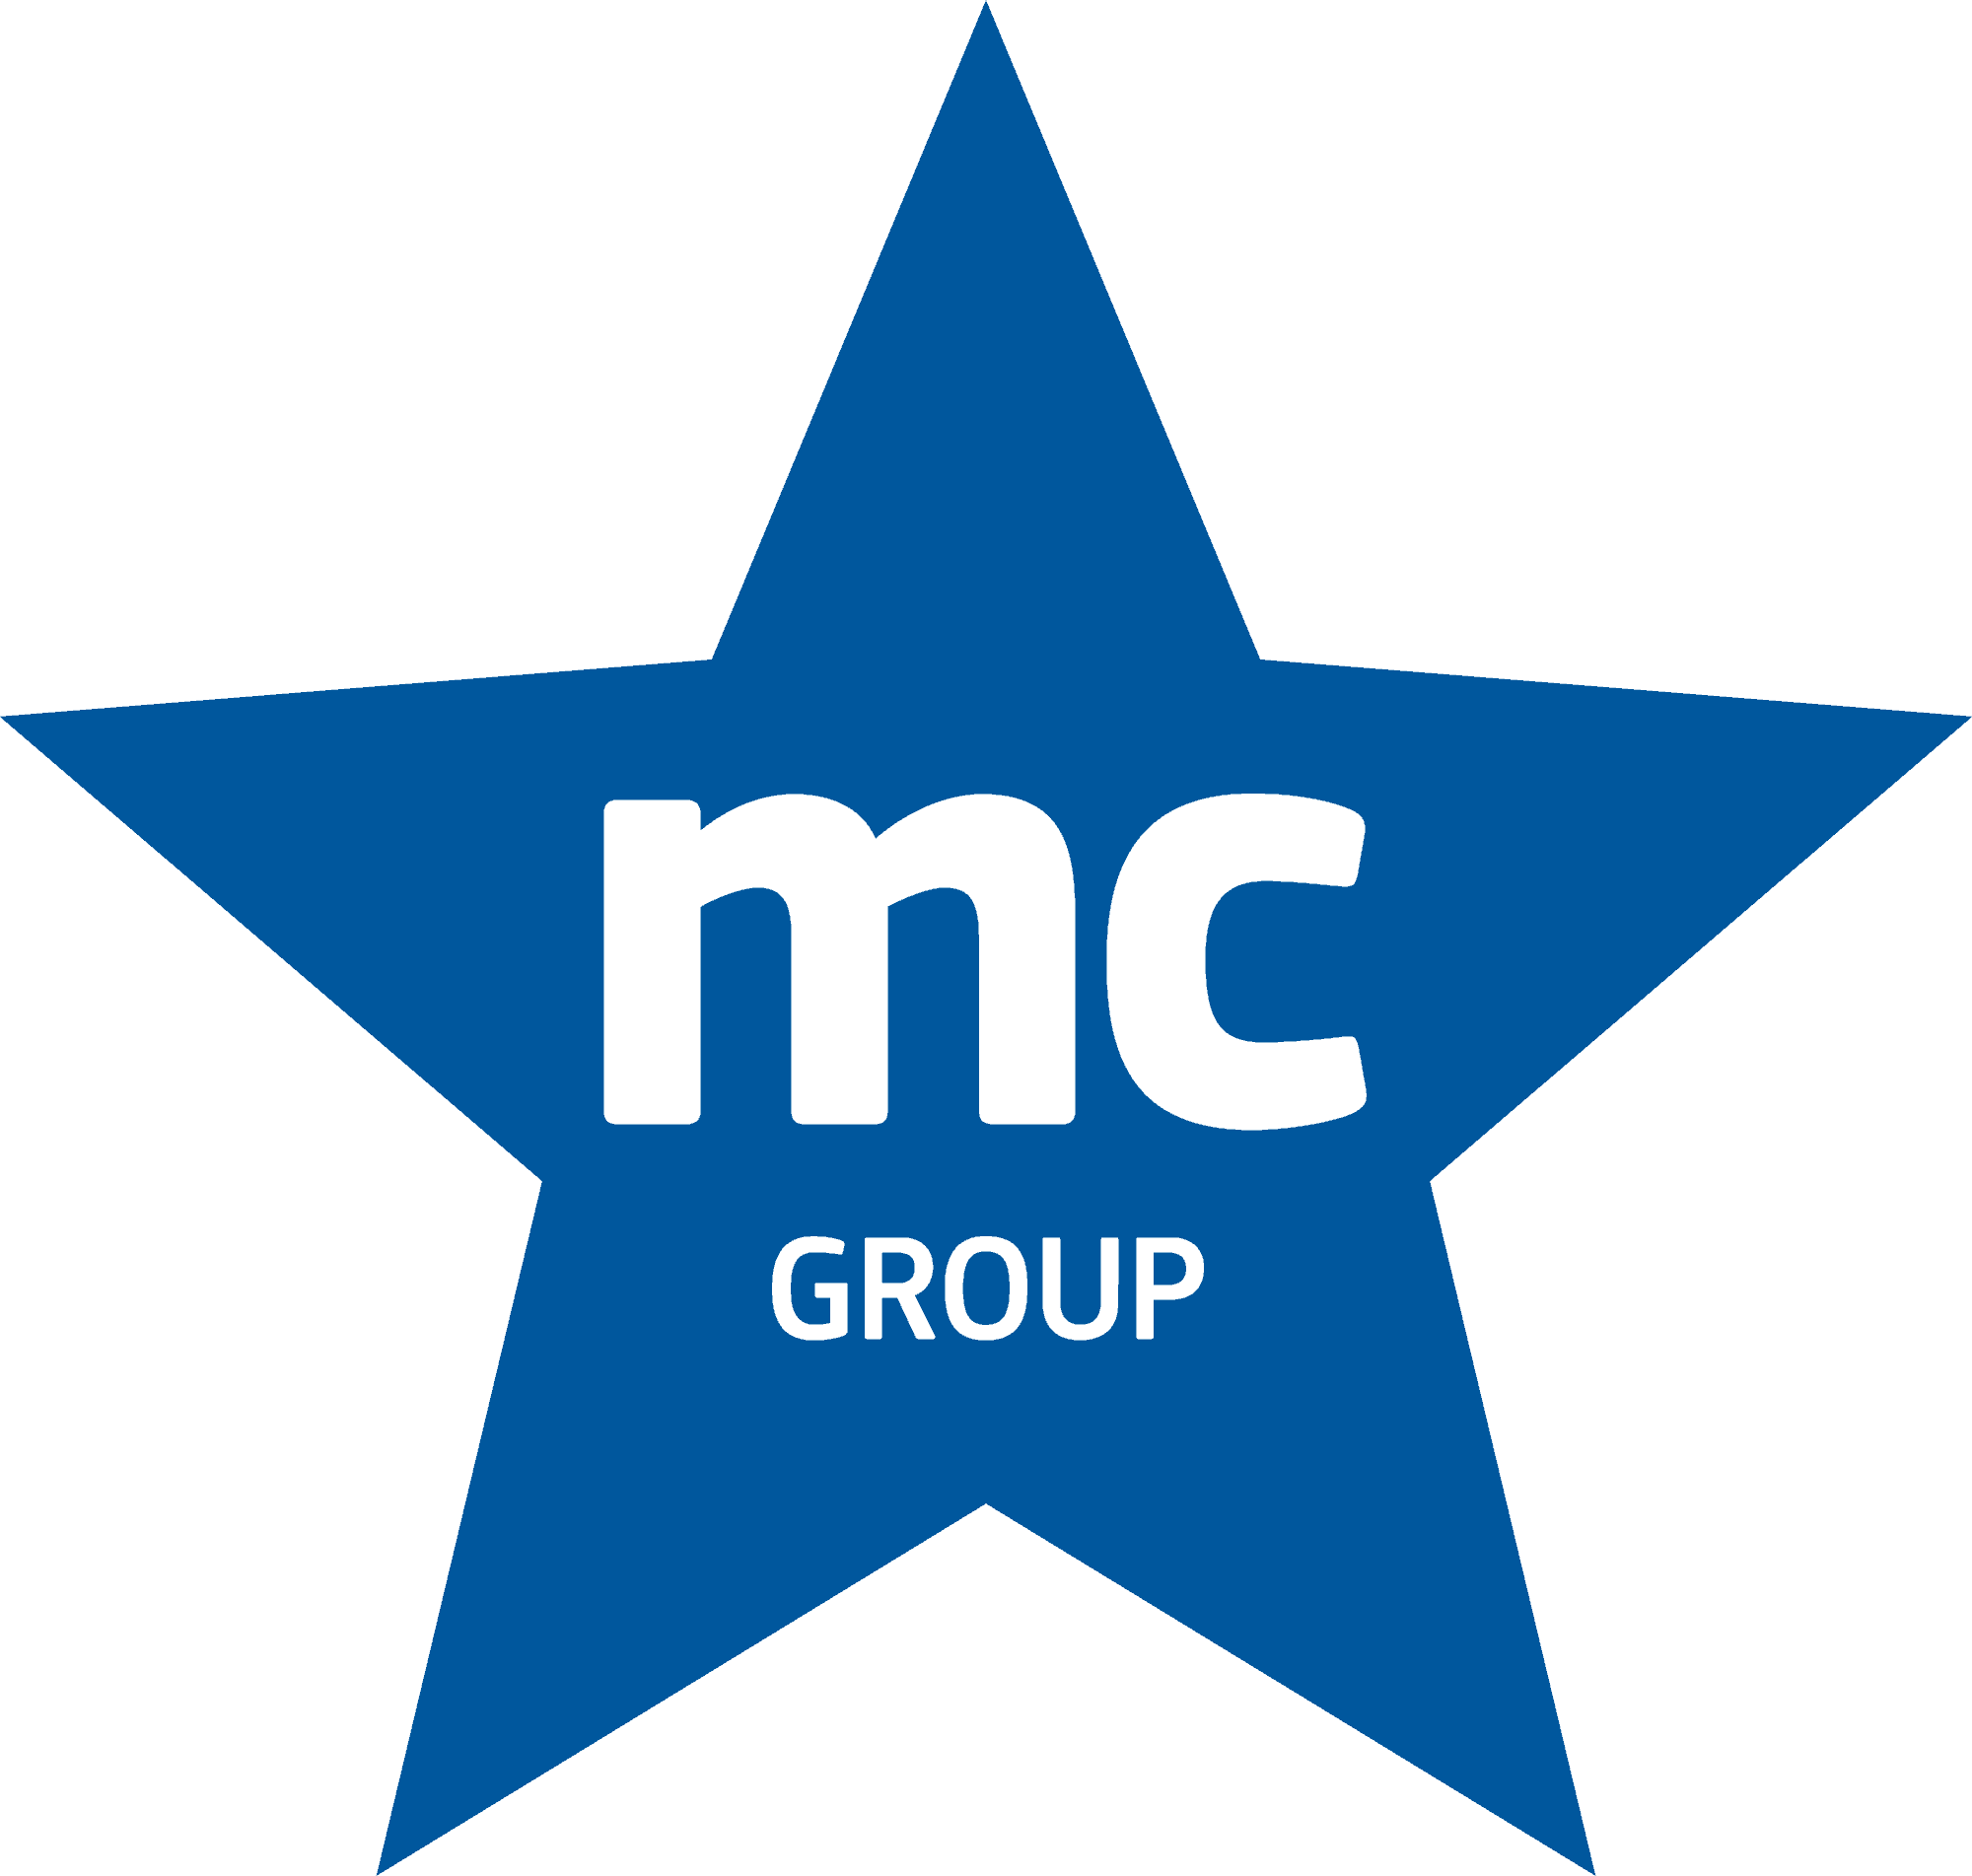 mc Group